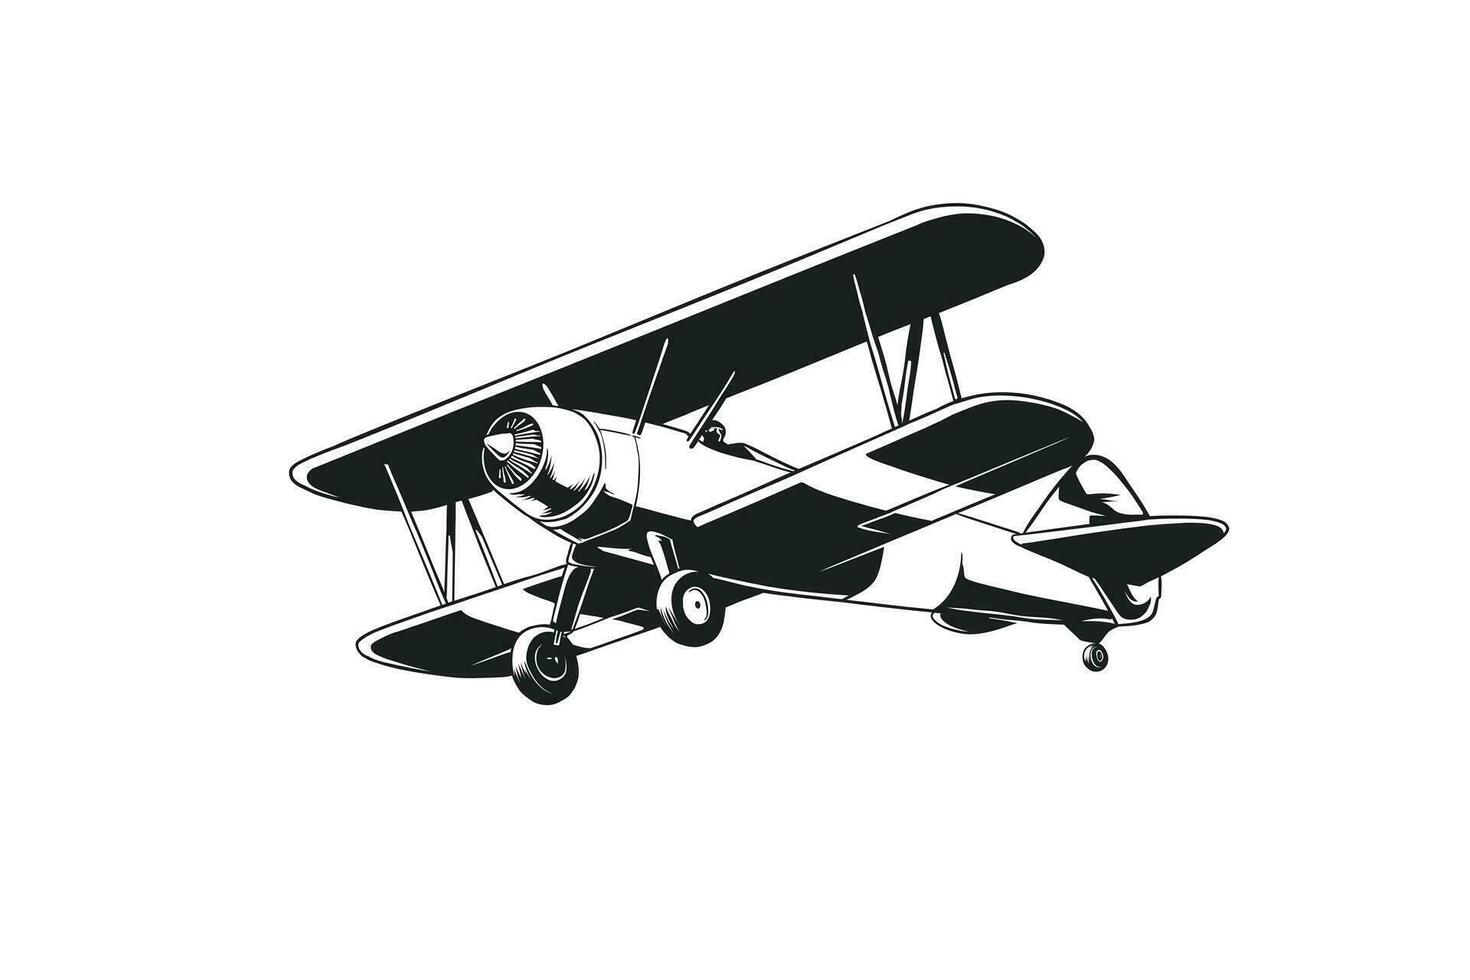 schwarz und Weiß Flugzeug Illustration im retro Stil vektor